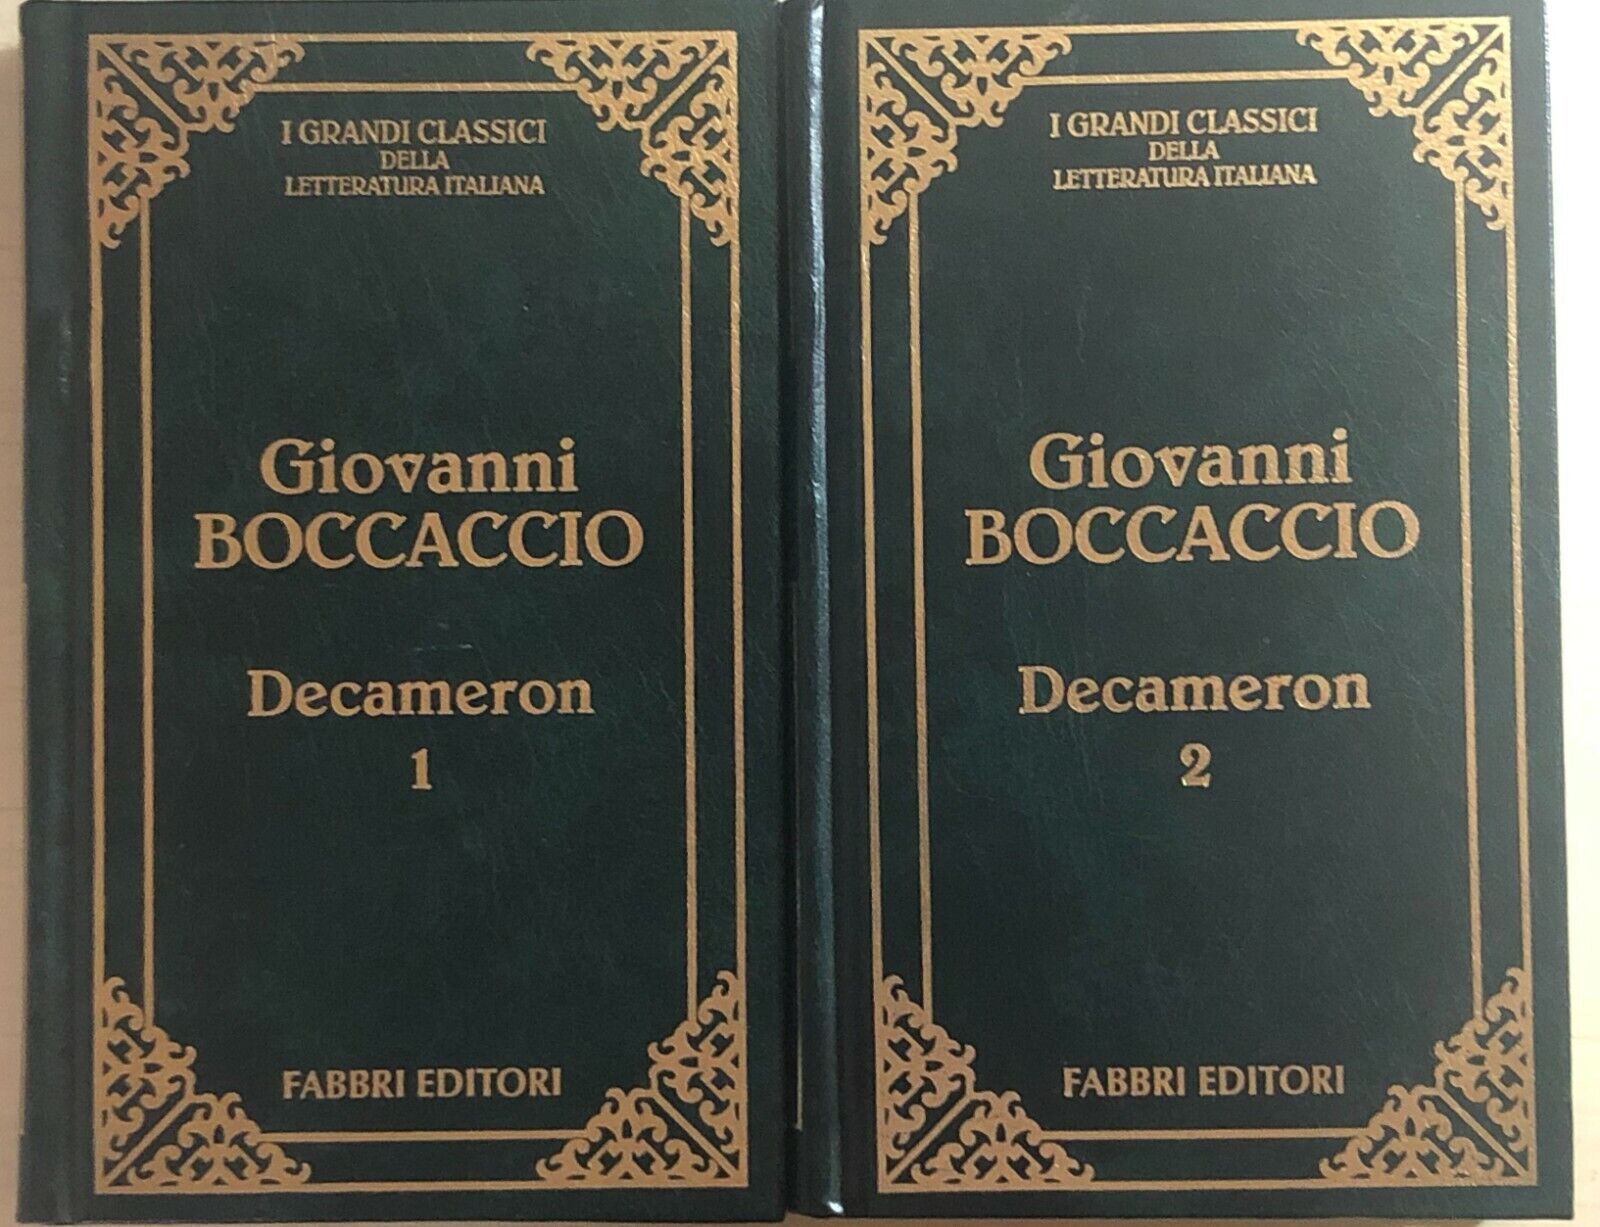 Decameron 1-2 di Giovanni Boccaccio, 1995, Fabbri Editori